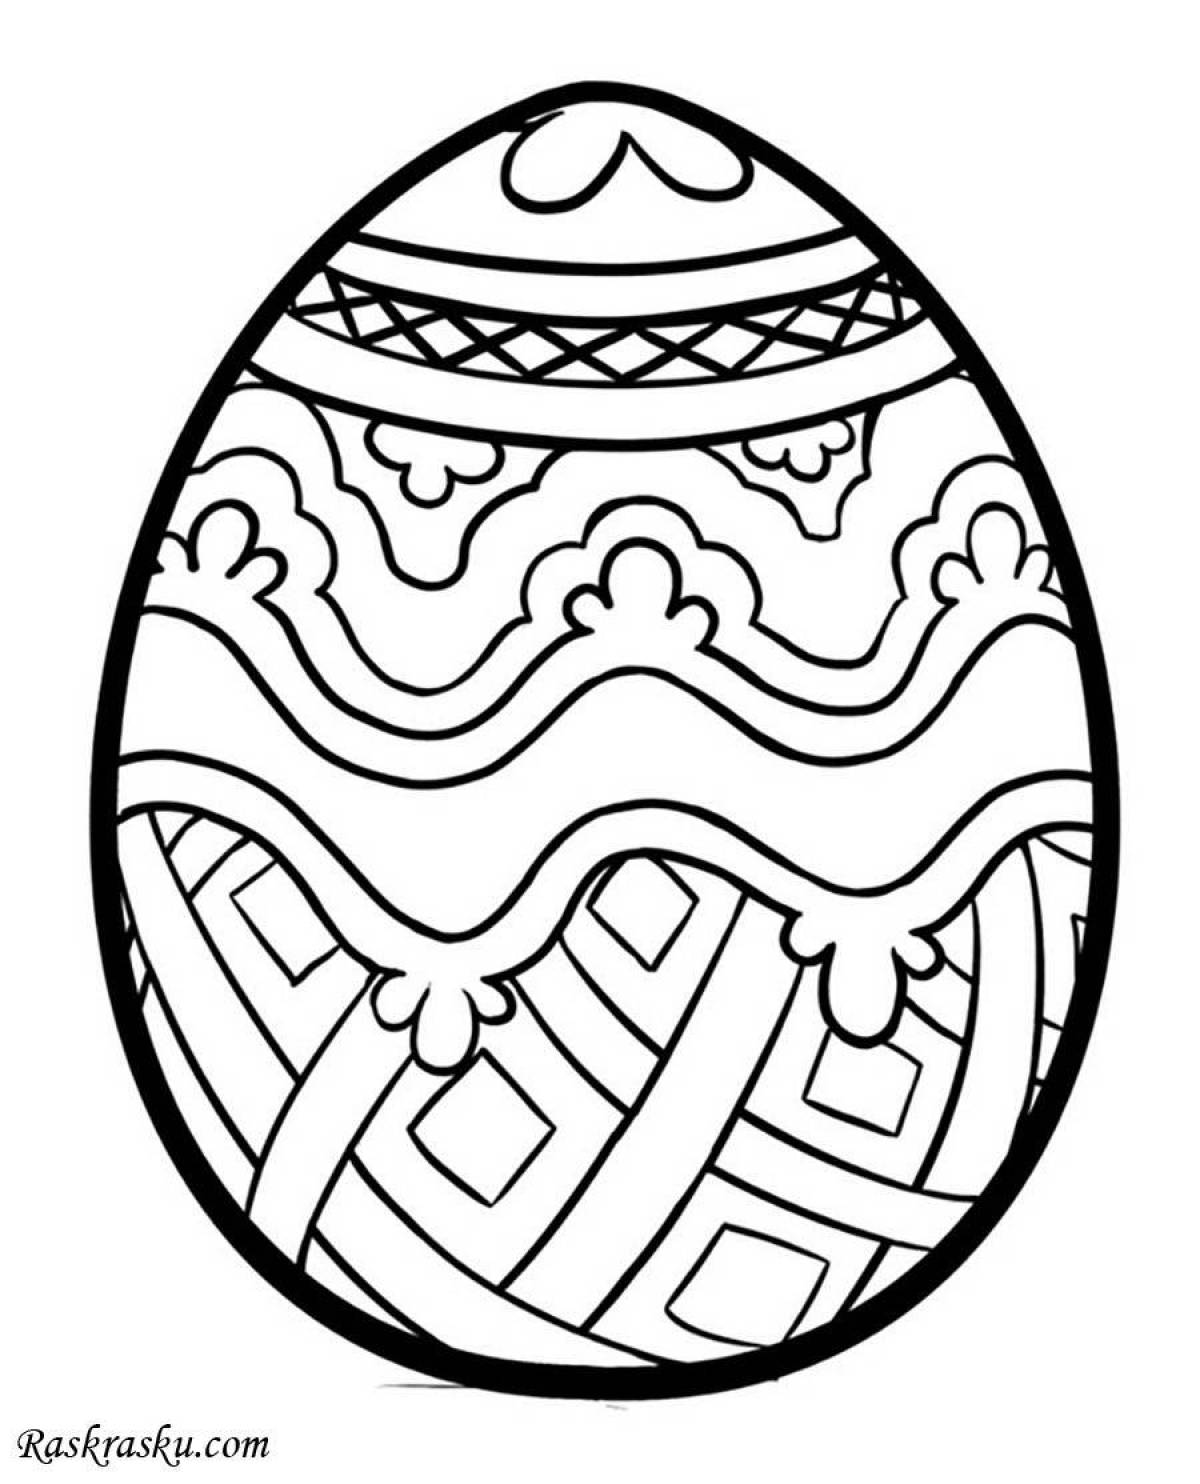 Великолепное яйцо-раскраска